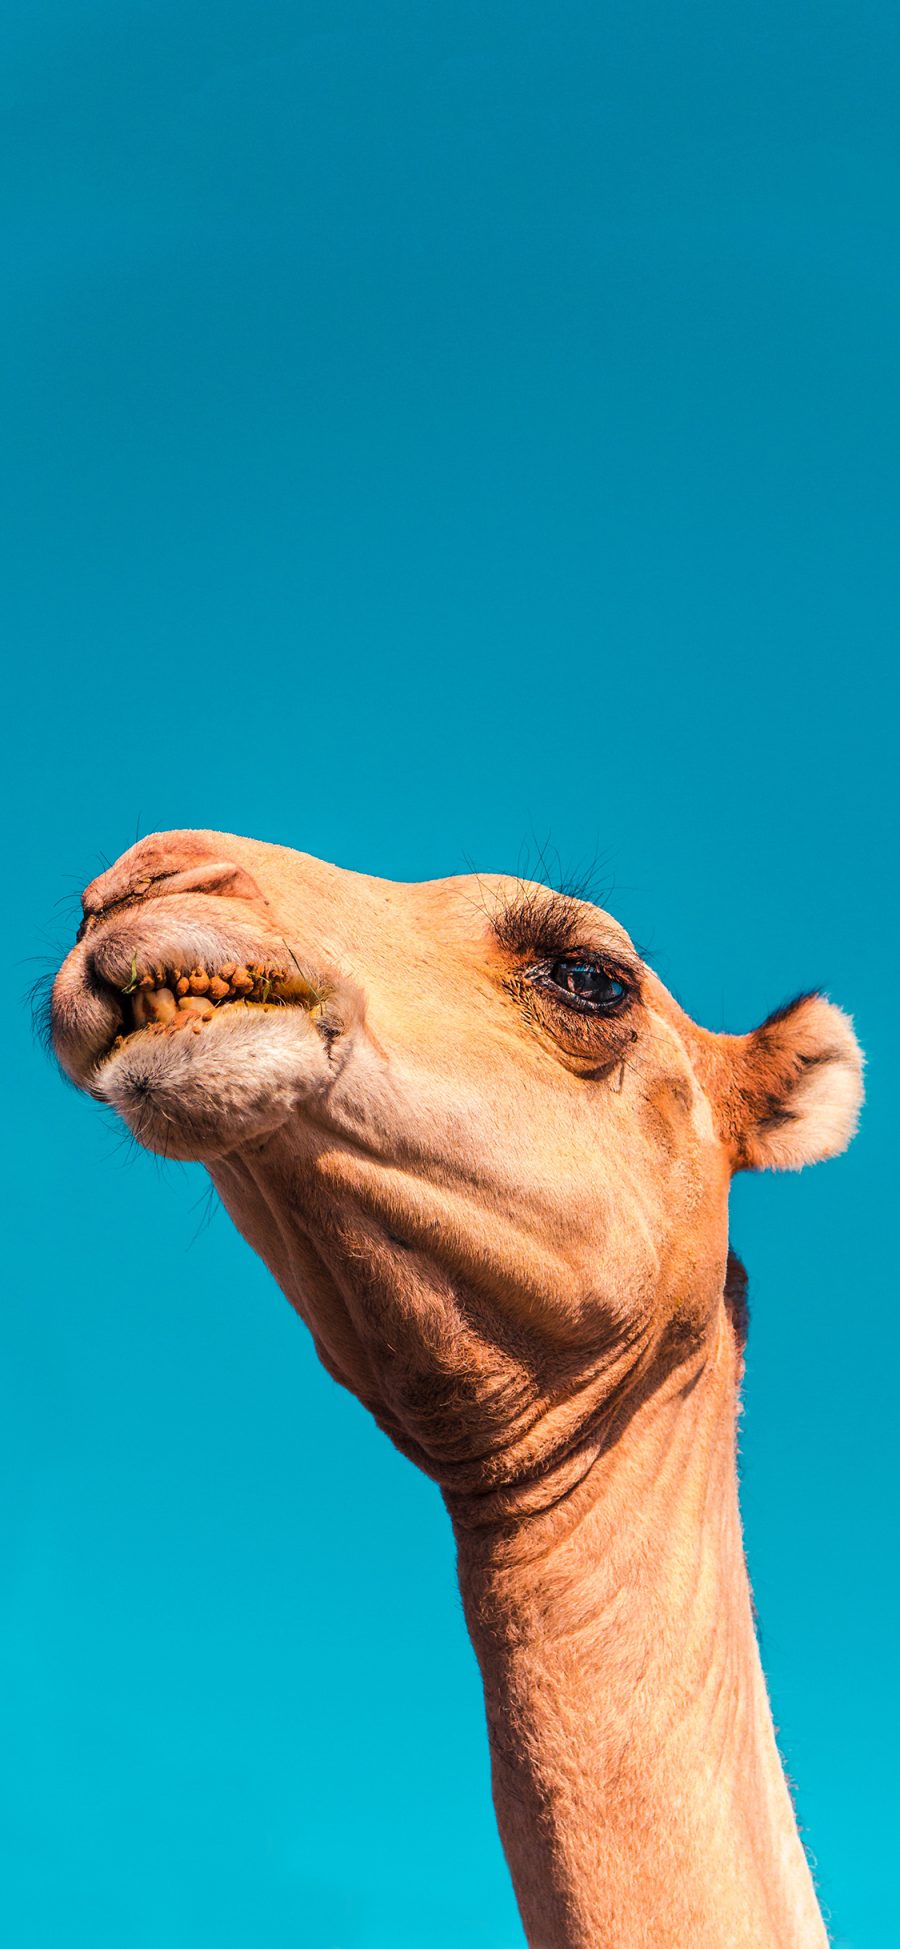 [2436×1125]骆驼 头部 蓝天 仰拍 苹果手机壁纸图片